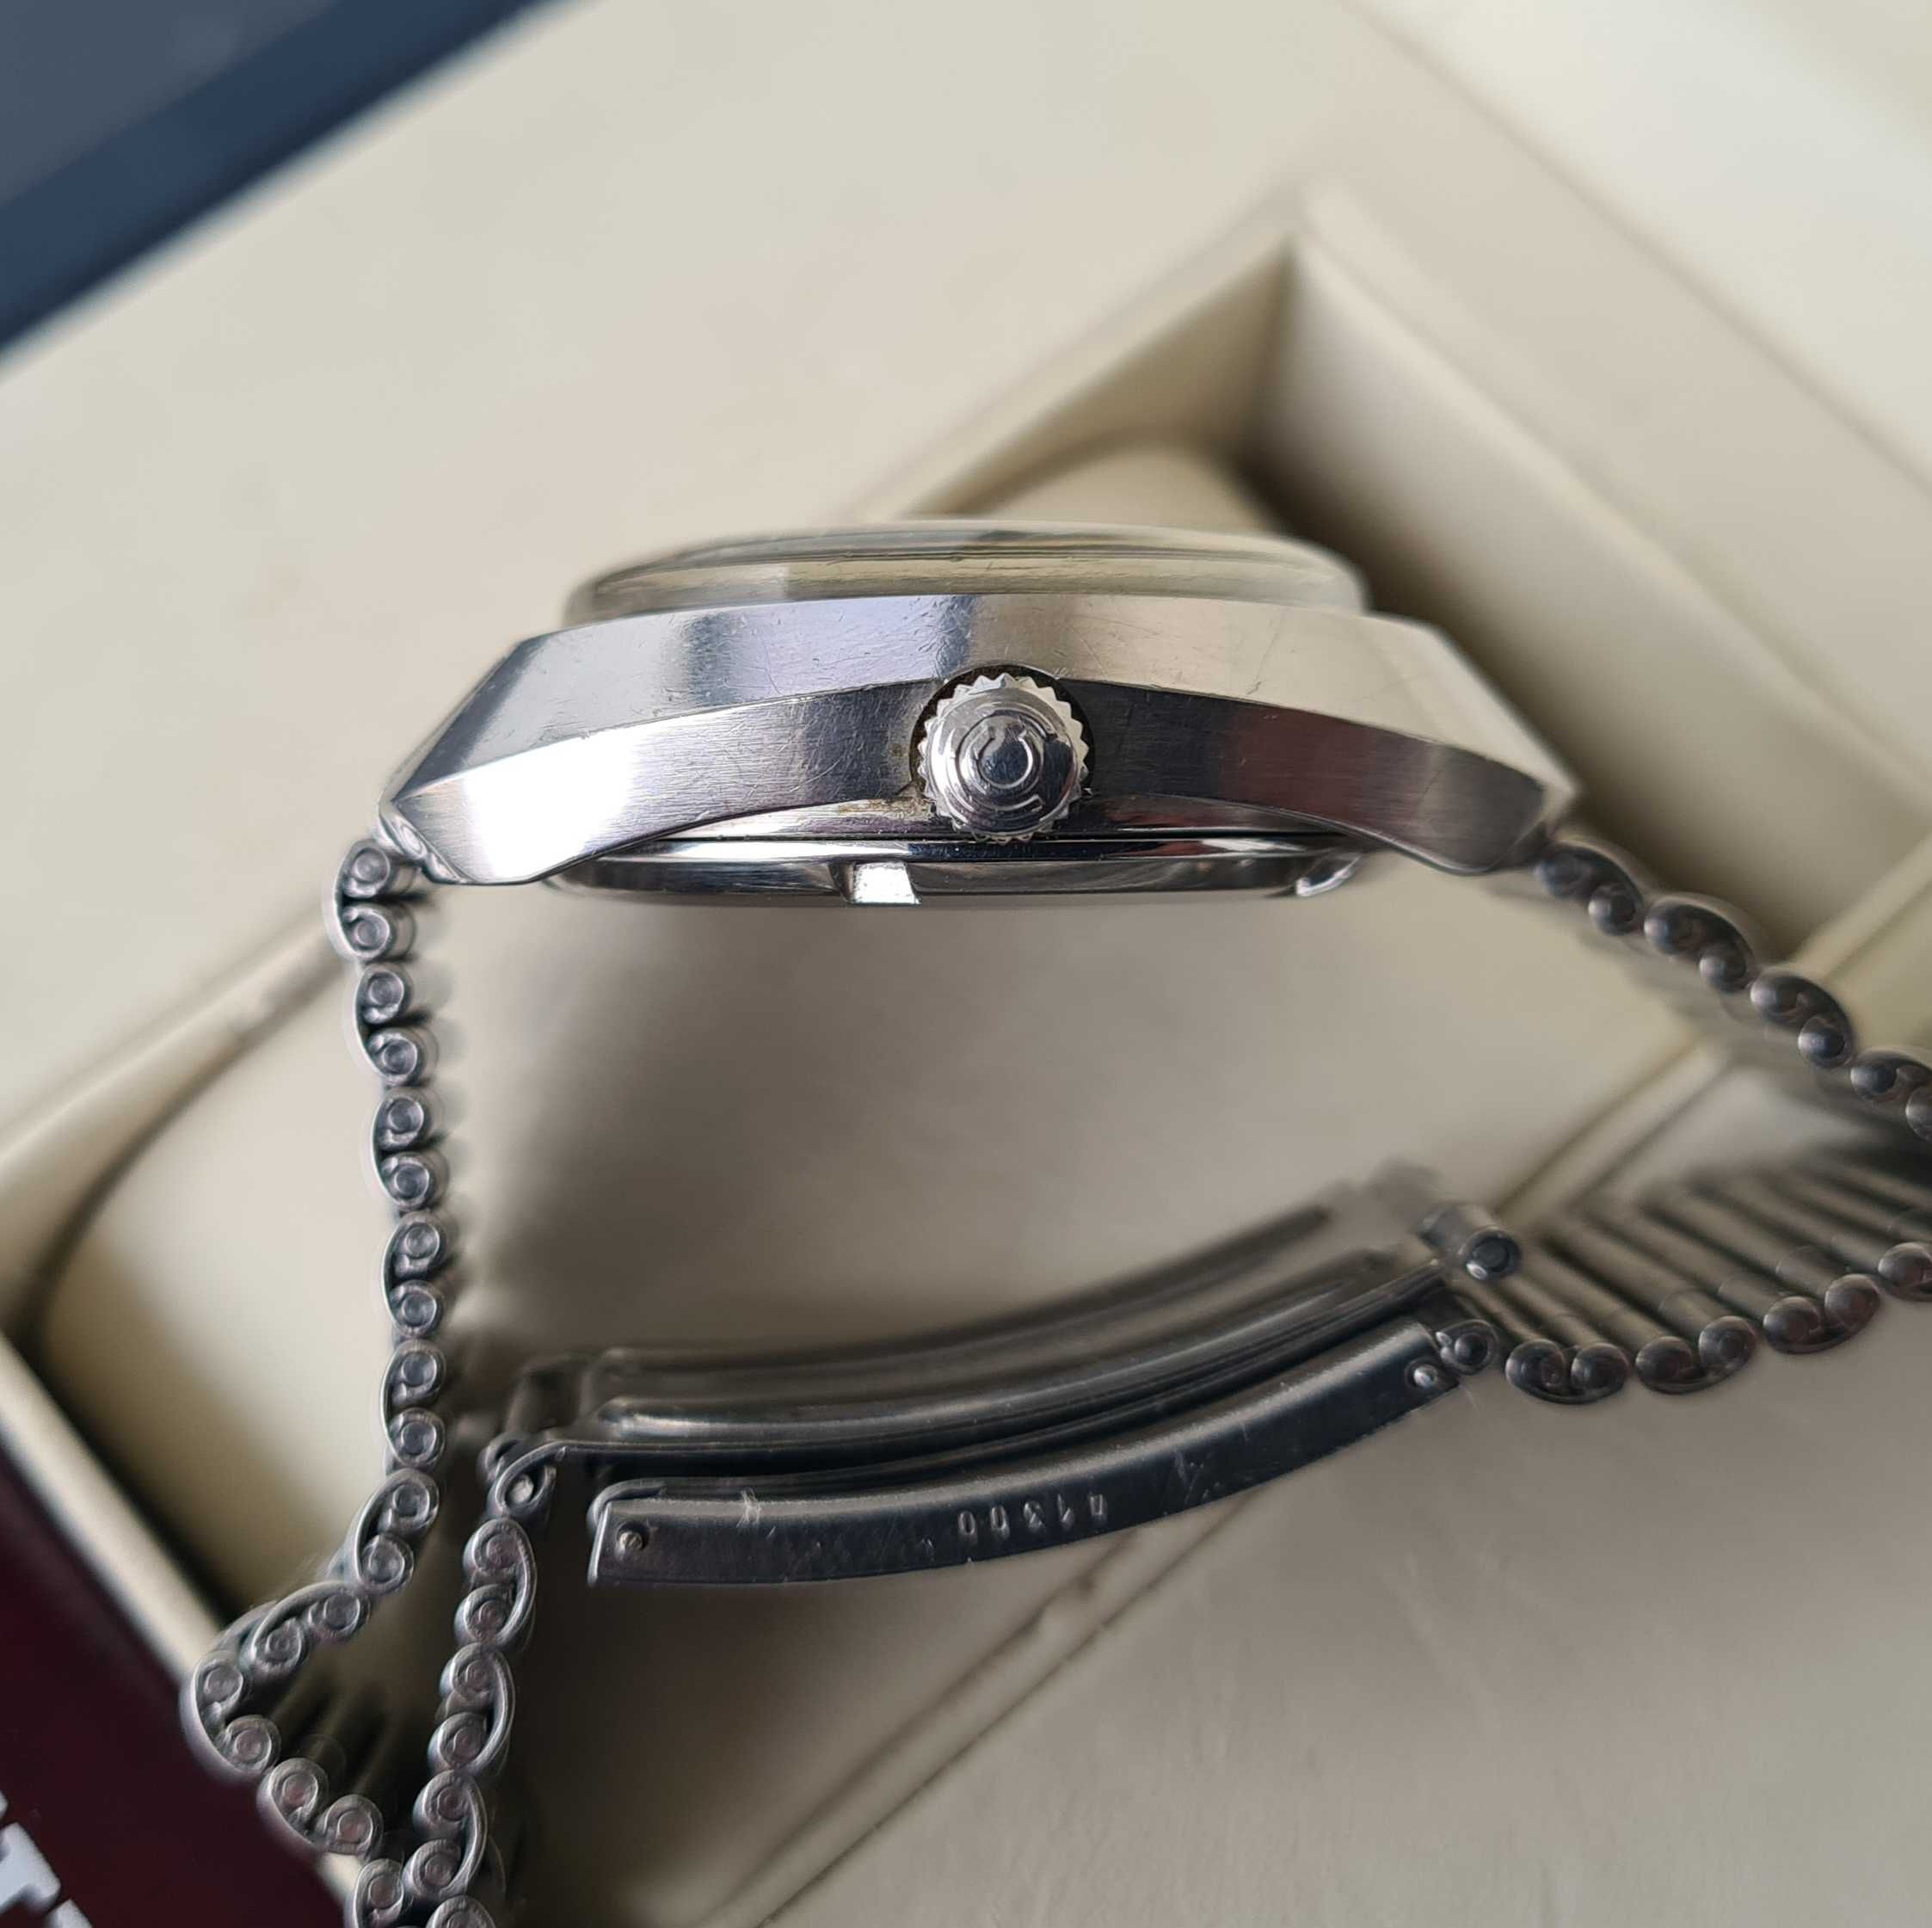 Okazja! Kultowa Certina DS-2 lata 70-te Swiss zegarek bransoleta ori